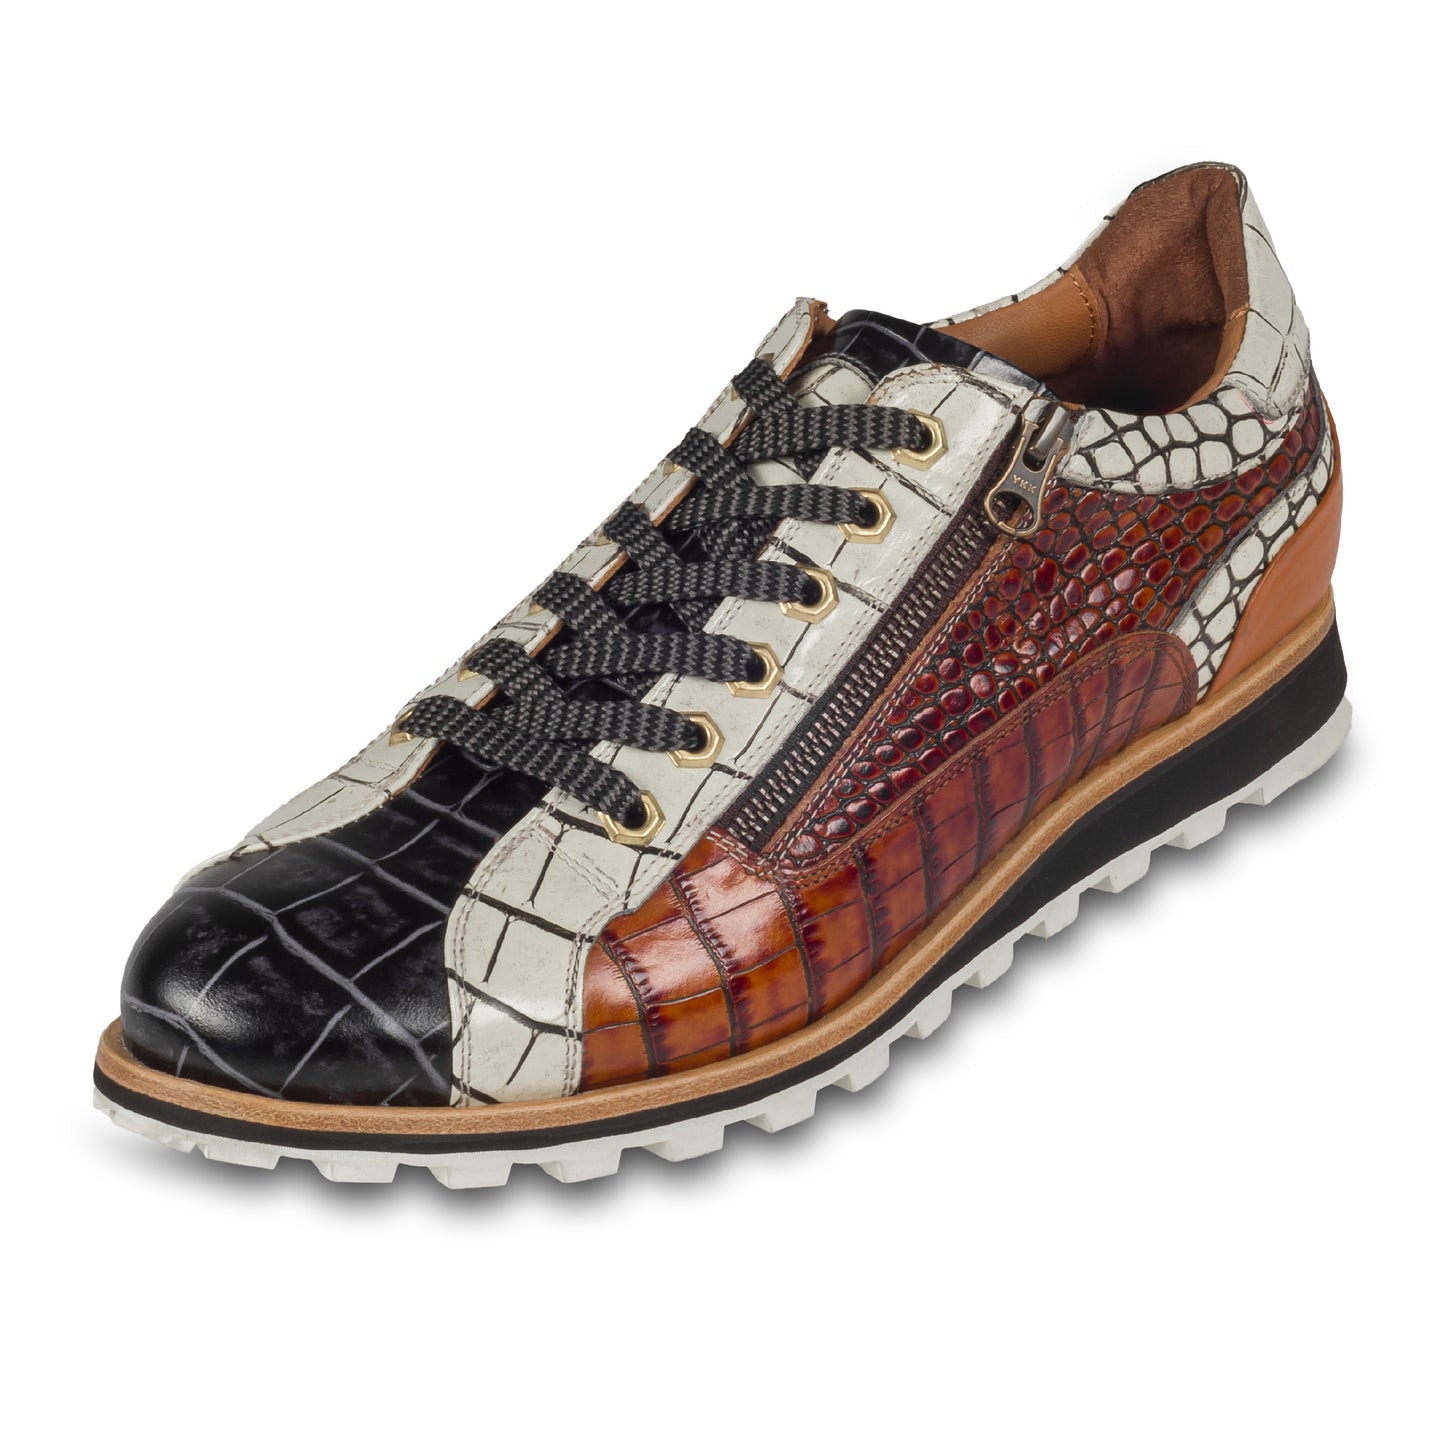 LORENZI - Italienische Herren Kalbsleder Sneaker, in schwarz / braun / weiß, mit Reptil Prägung und seitlichem Reißverschluß. Handgefertigt und durchgenäht. Schräge Ansicht linker Schuh mit grauem Schnürsenkel..